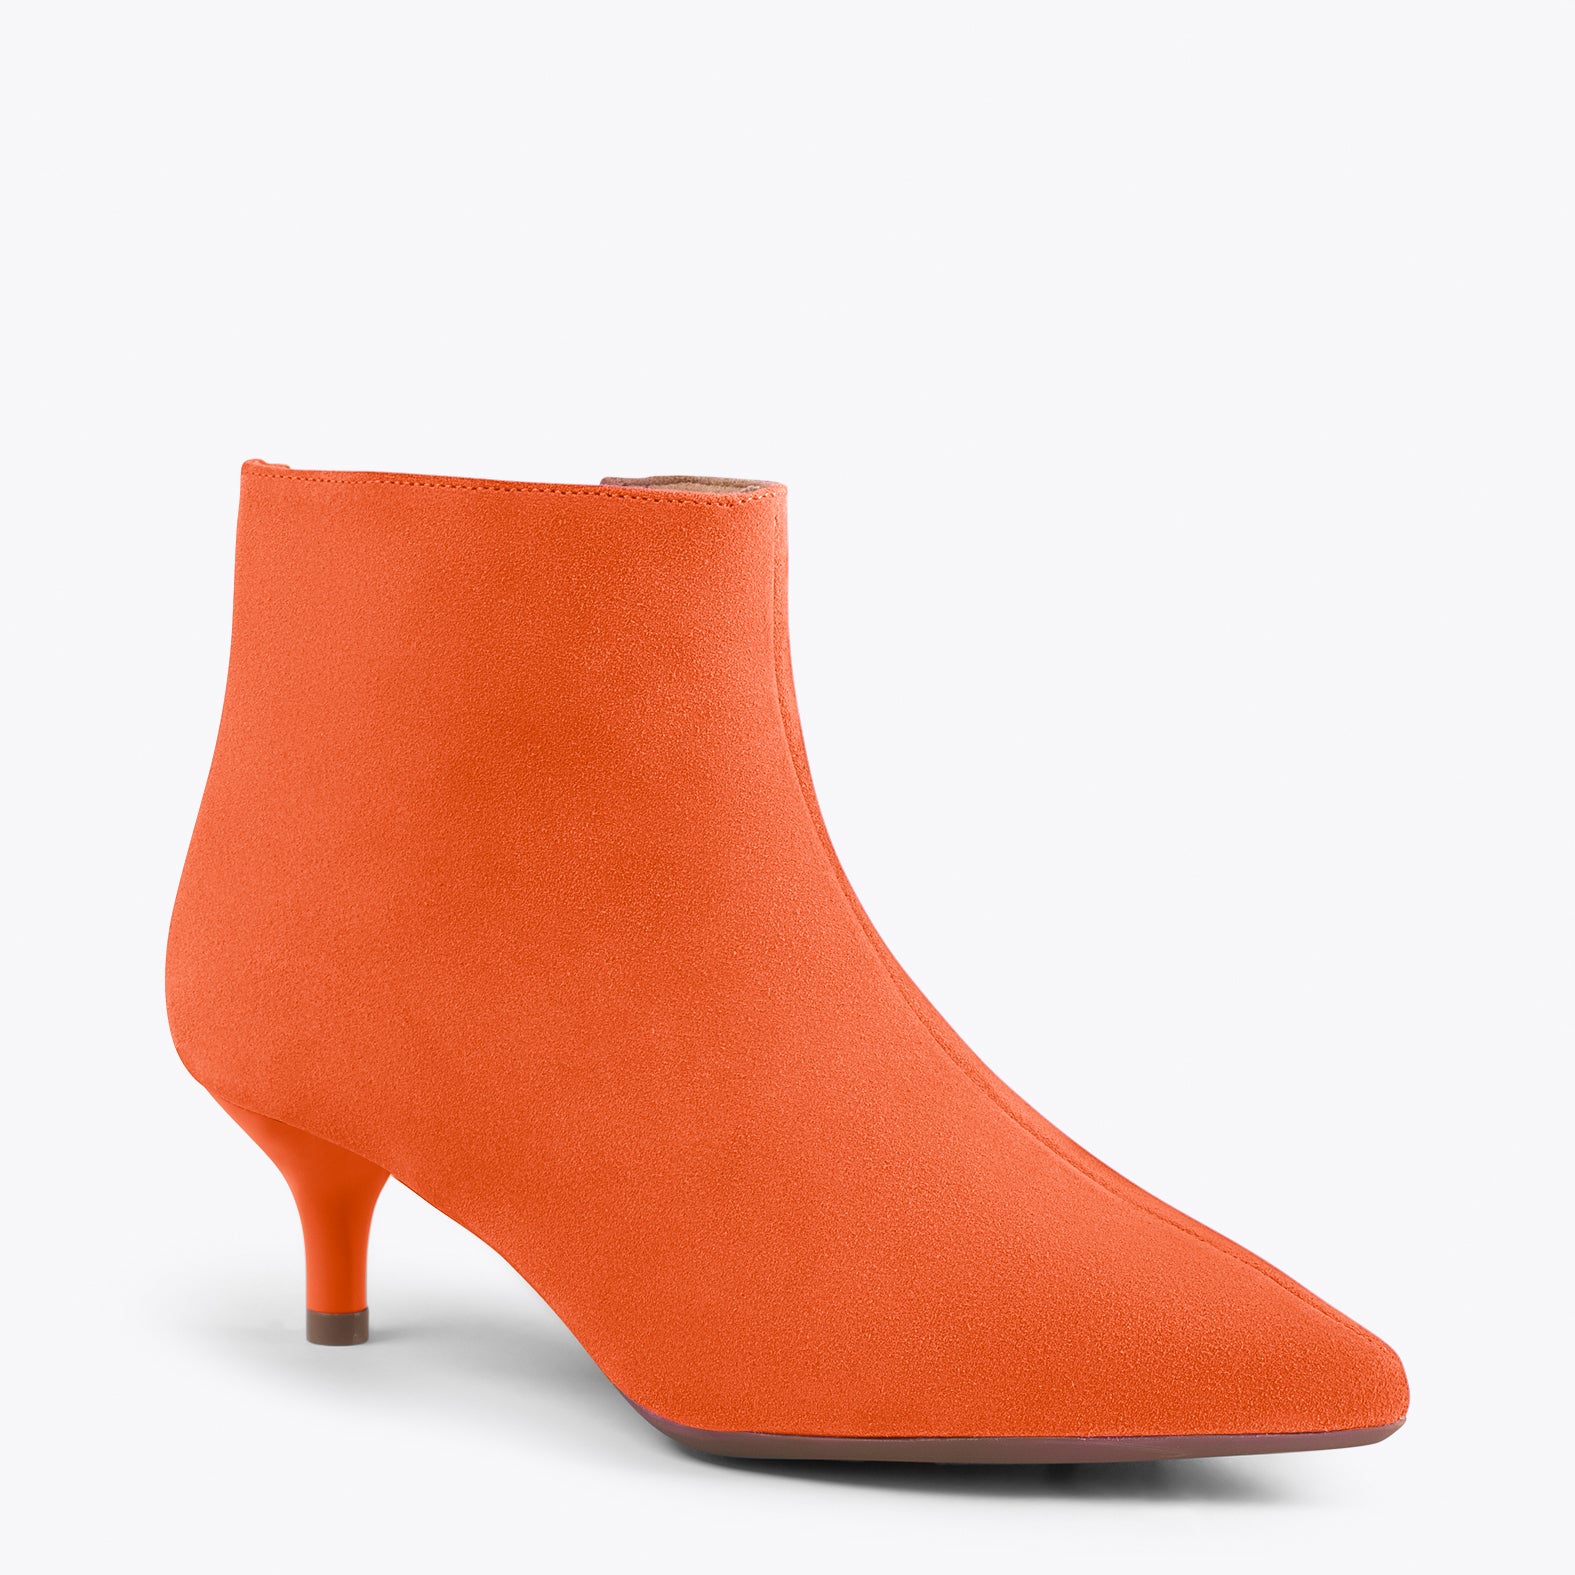 OUTFIT – ORANGE elegant low heel booties